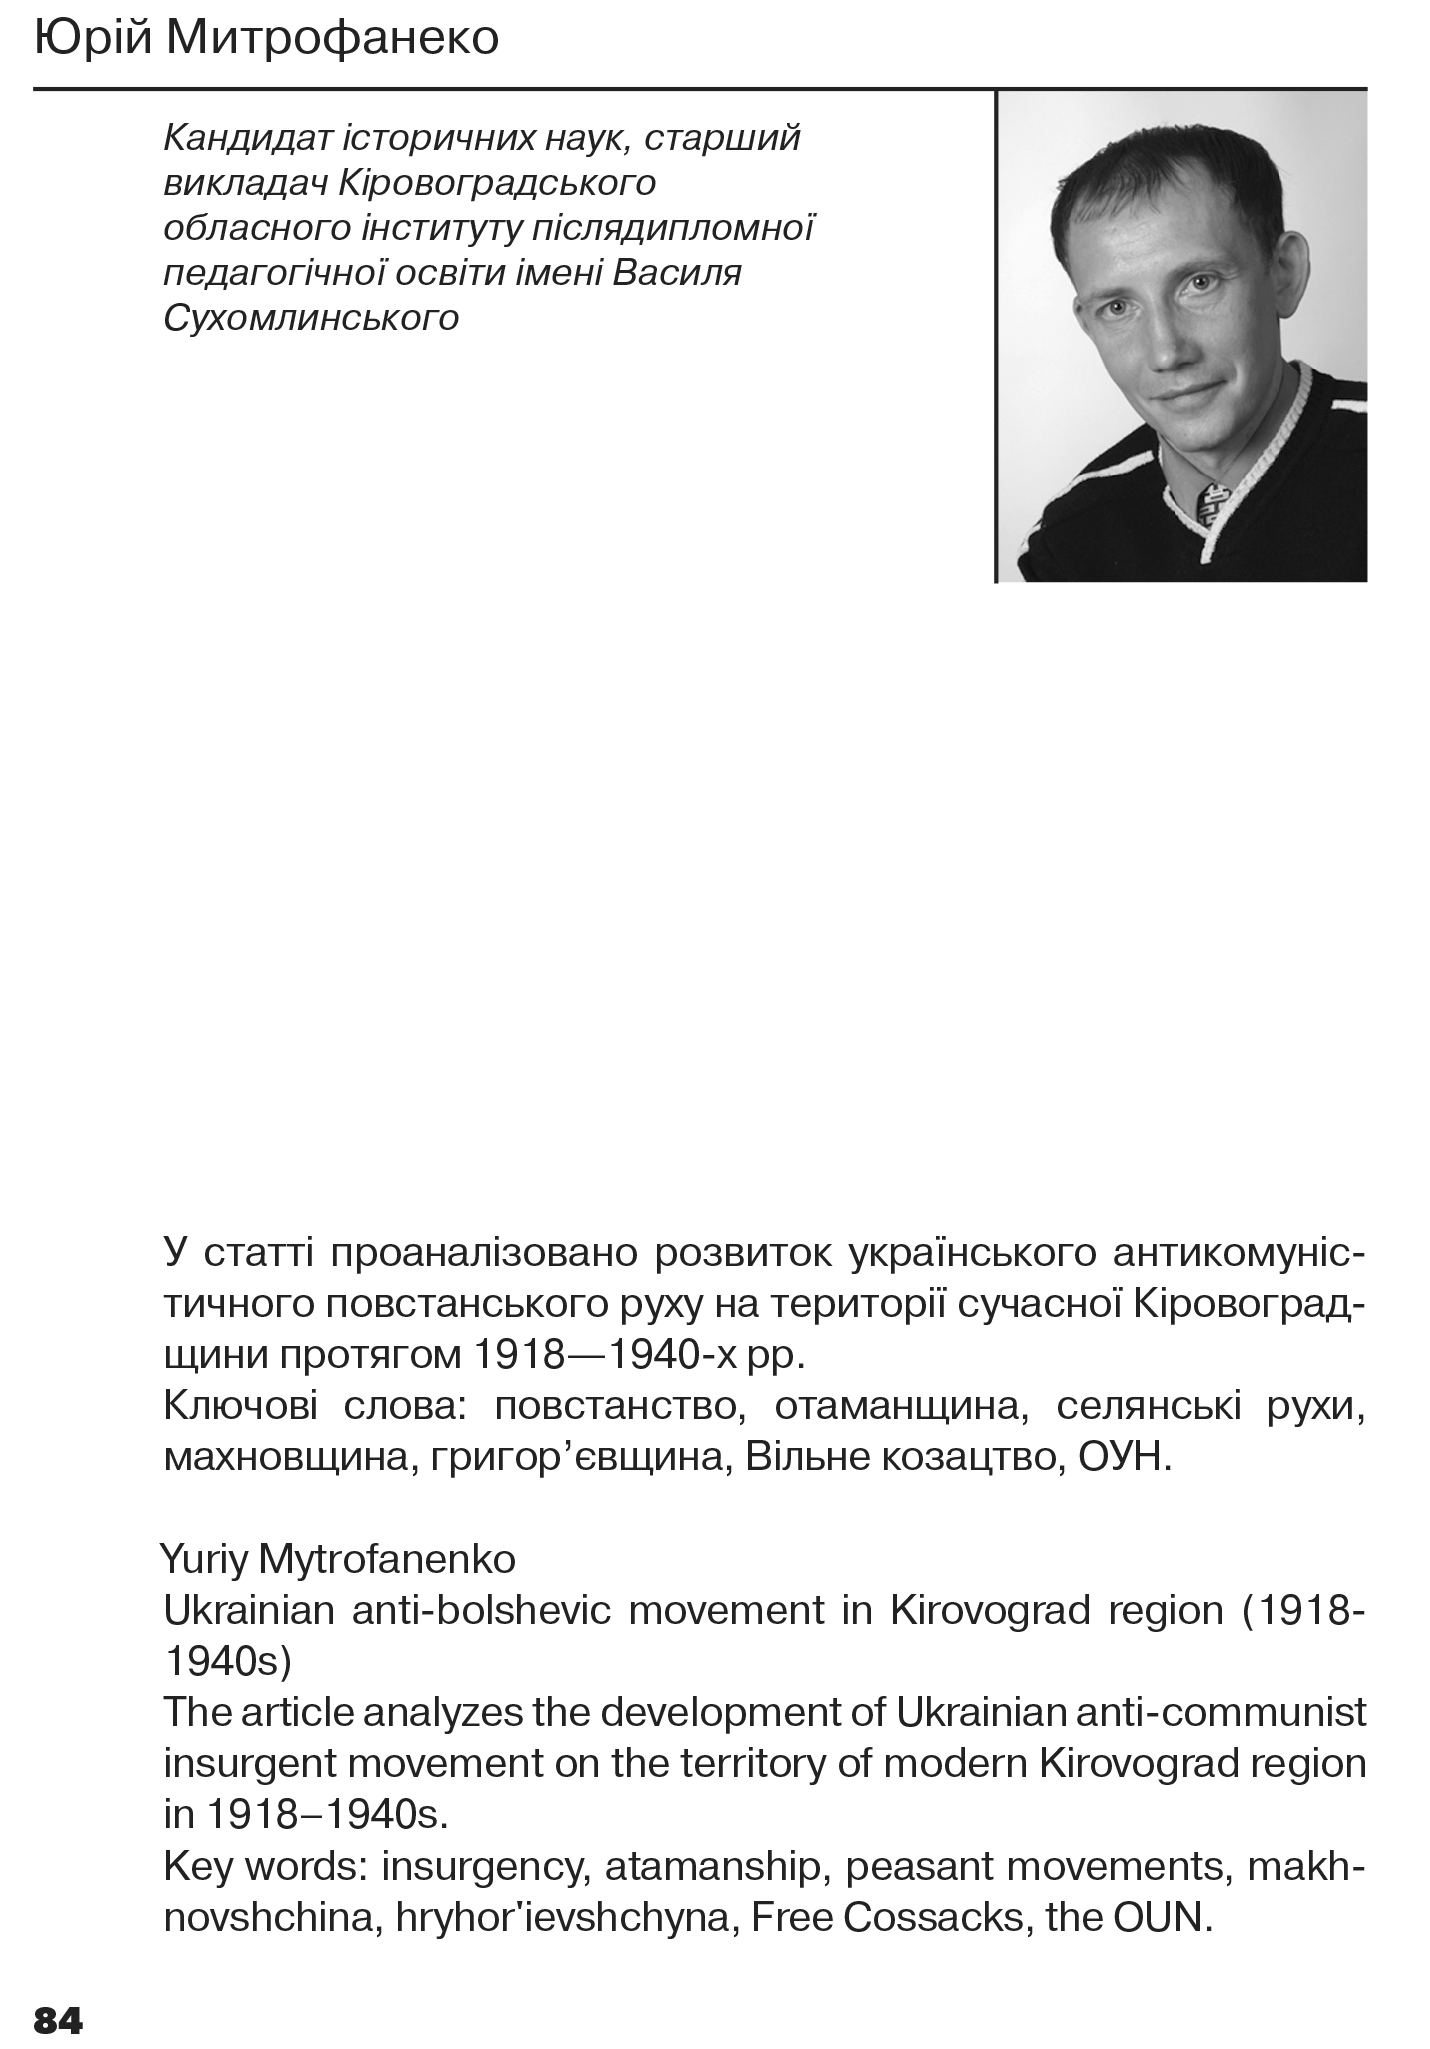 Український визвольний рух №18, ст. 84 - 96